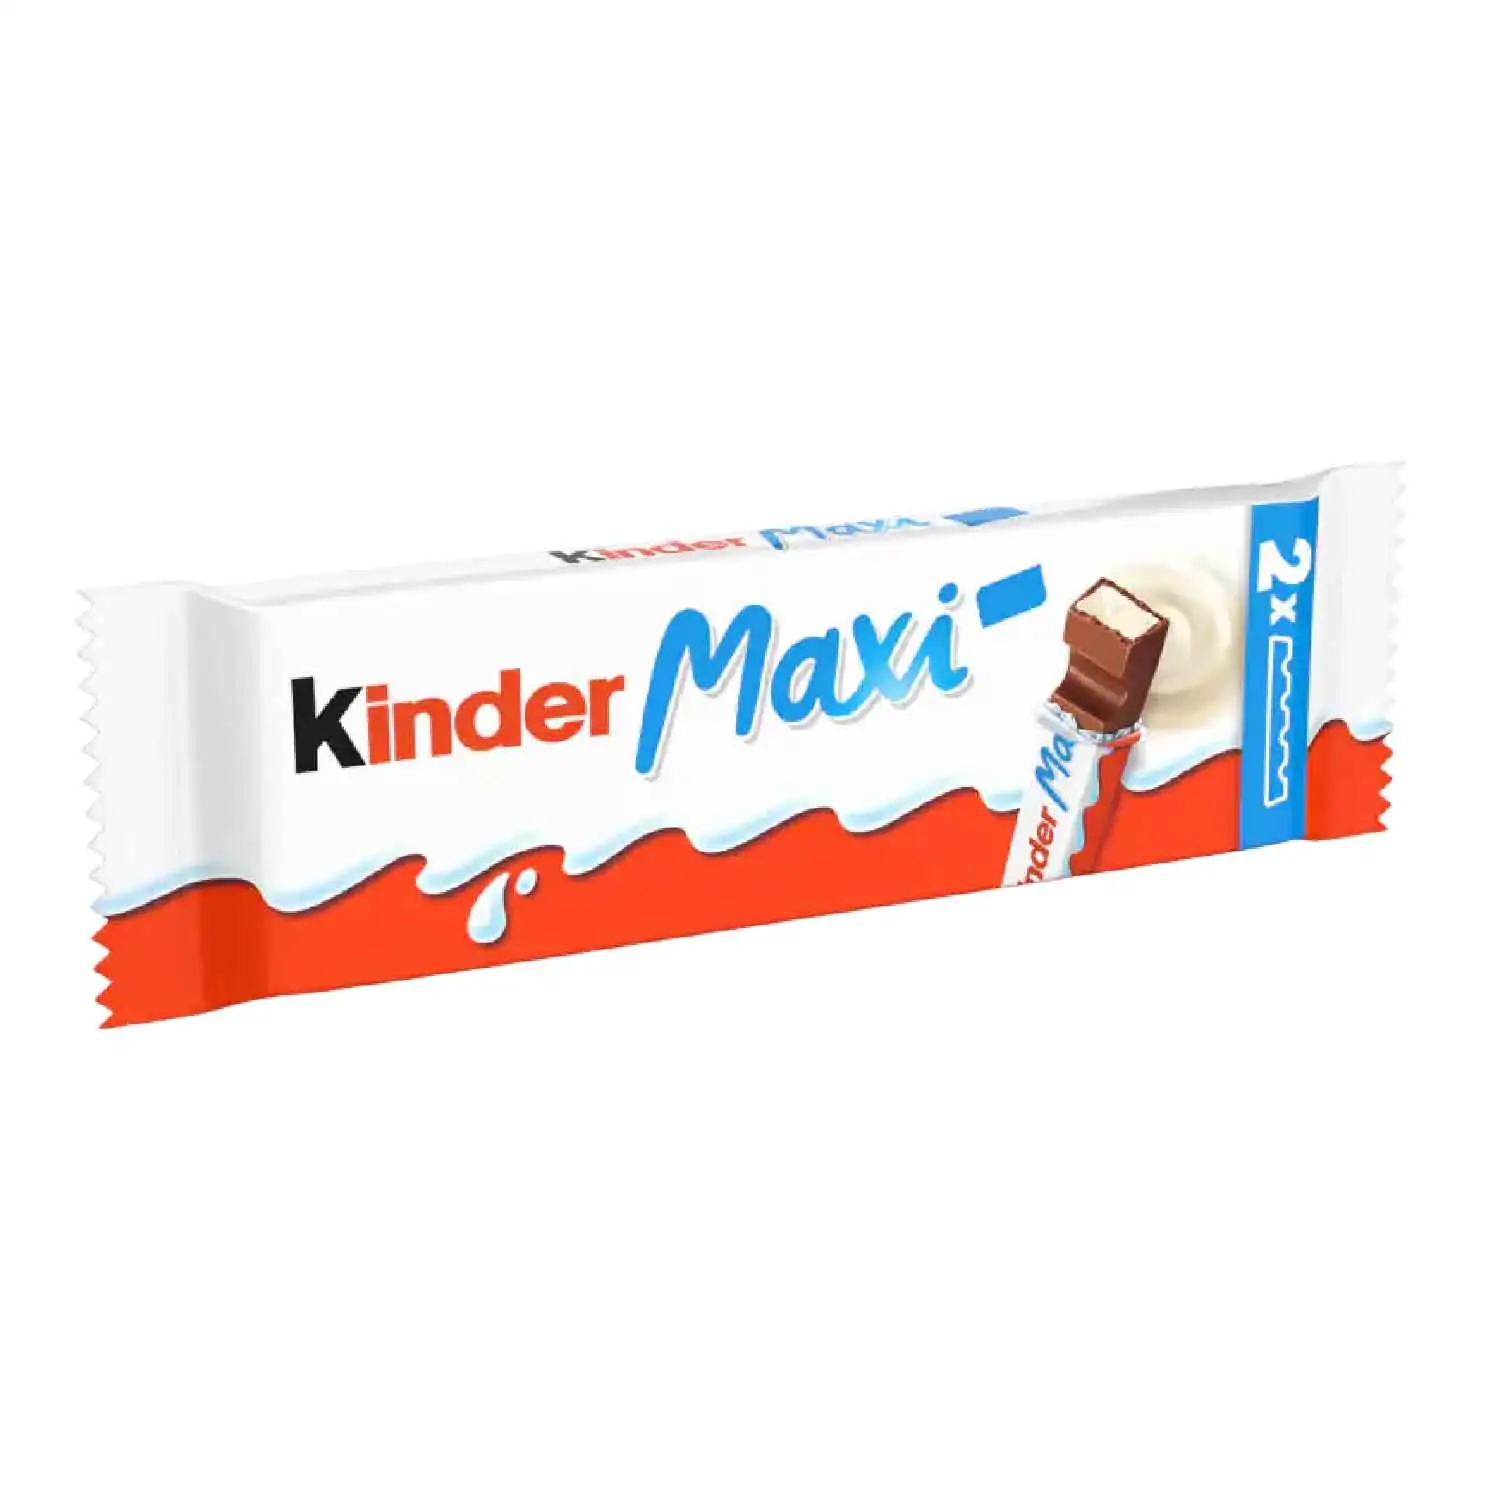 2x Kinder chocolate maxi 21g - Buy at Real Tobacco